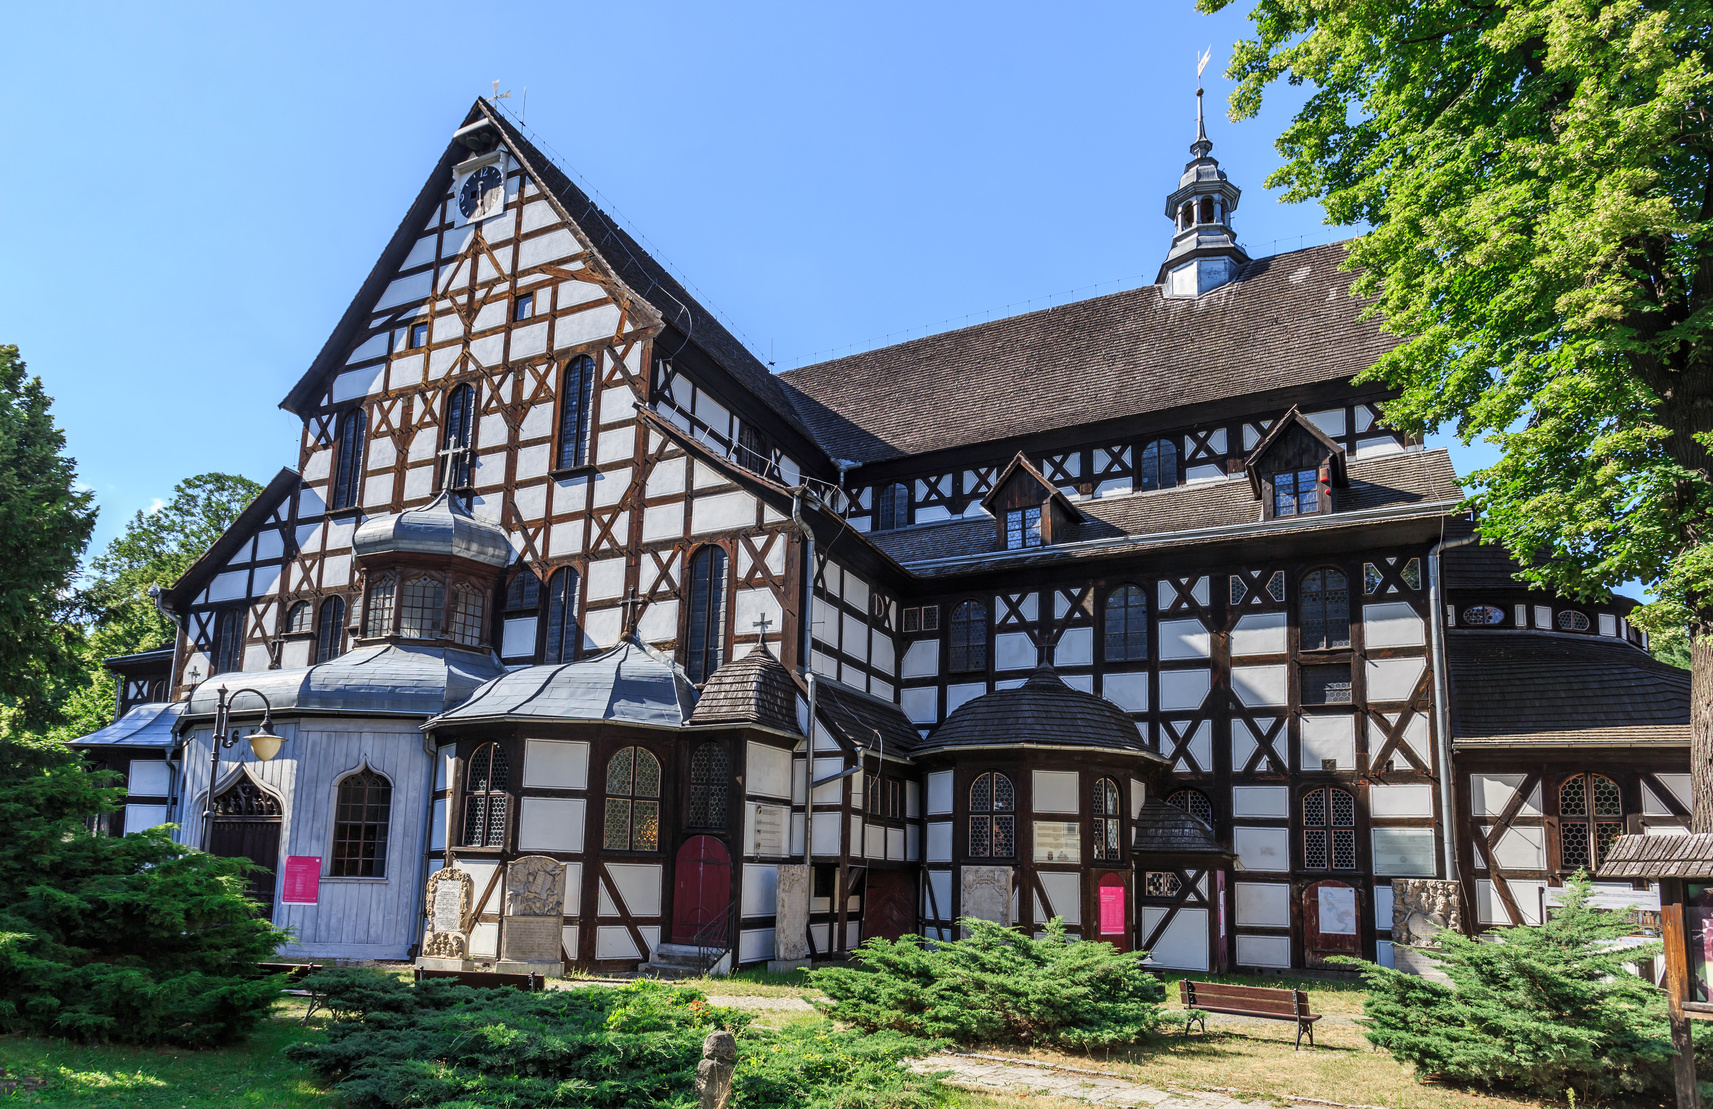 widnica - Koci Pokoju, wybudowany na mocy  traktatu westfalskiego,koczcego wojn trzydziestoletni. Od 2001 roku na licie dziedzictwa UNESCO. Najwikszy w Europie koci szachulcowy